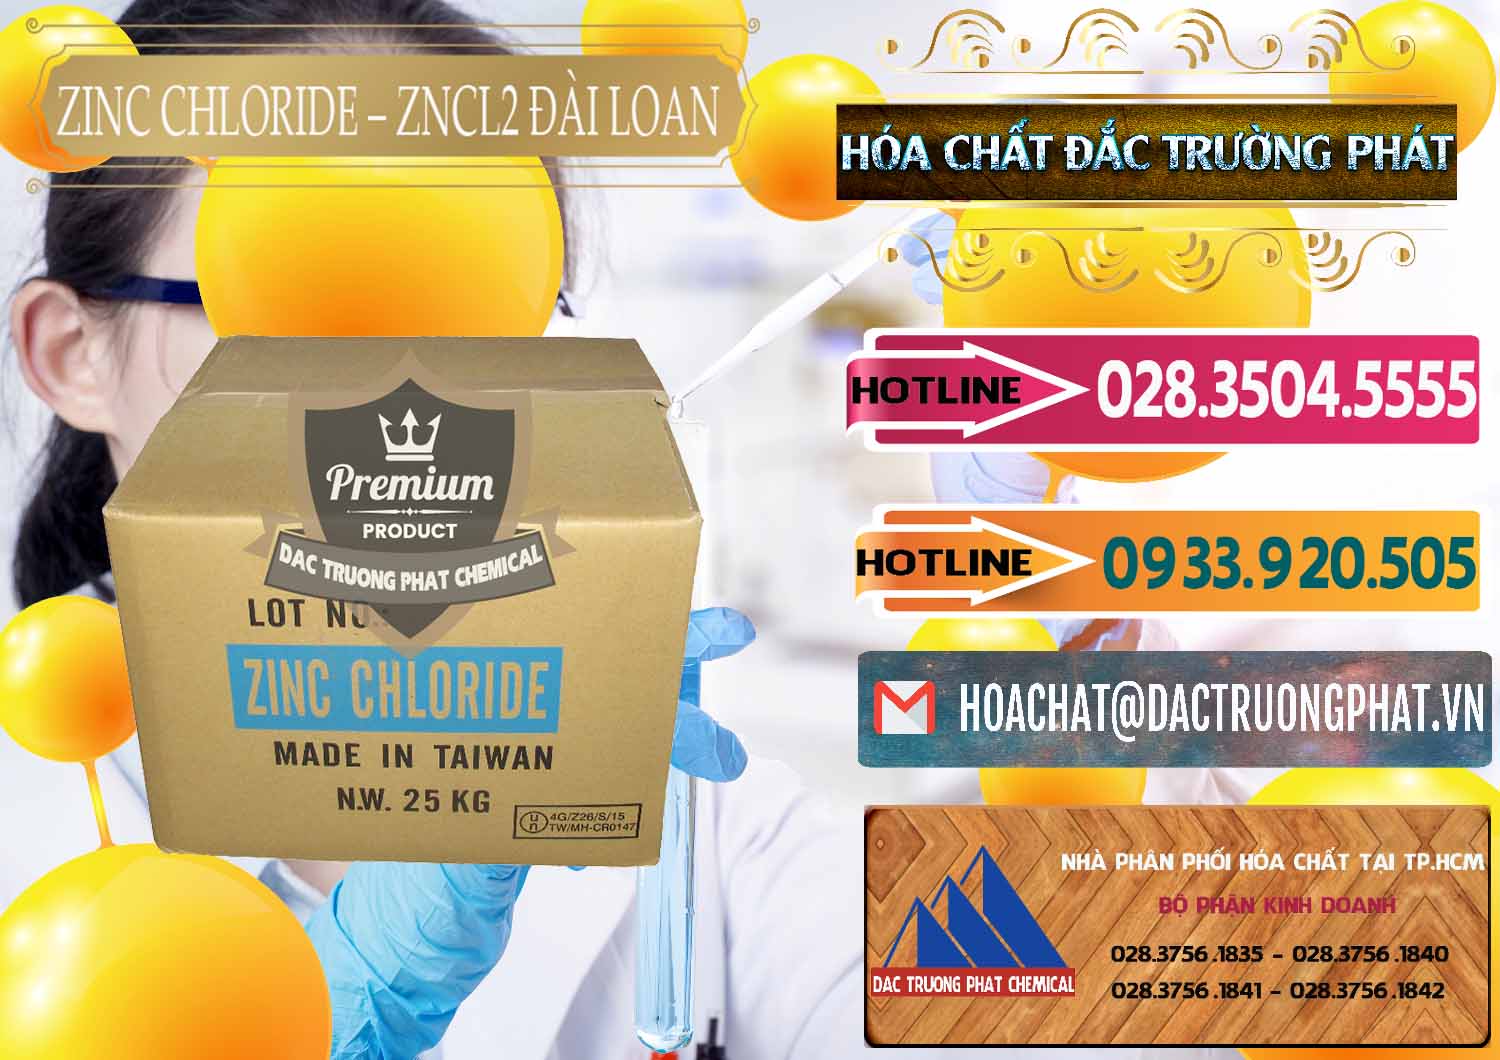 Chuyên bán và phân phối Zinc Chloride - ZNCL2 96% Đài Loan Taiwan - 0178 - Cty chuyên bán - cung cấp hóa chất tại TP.HCM - dactruongphat.vn